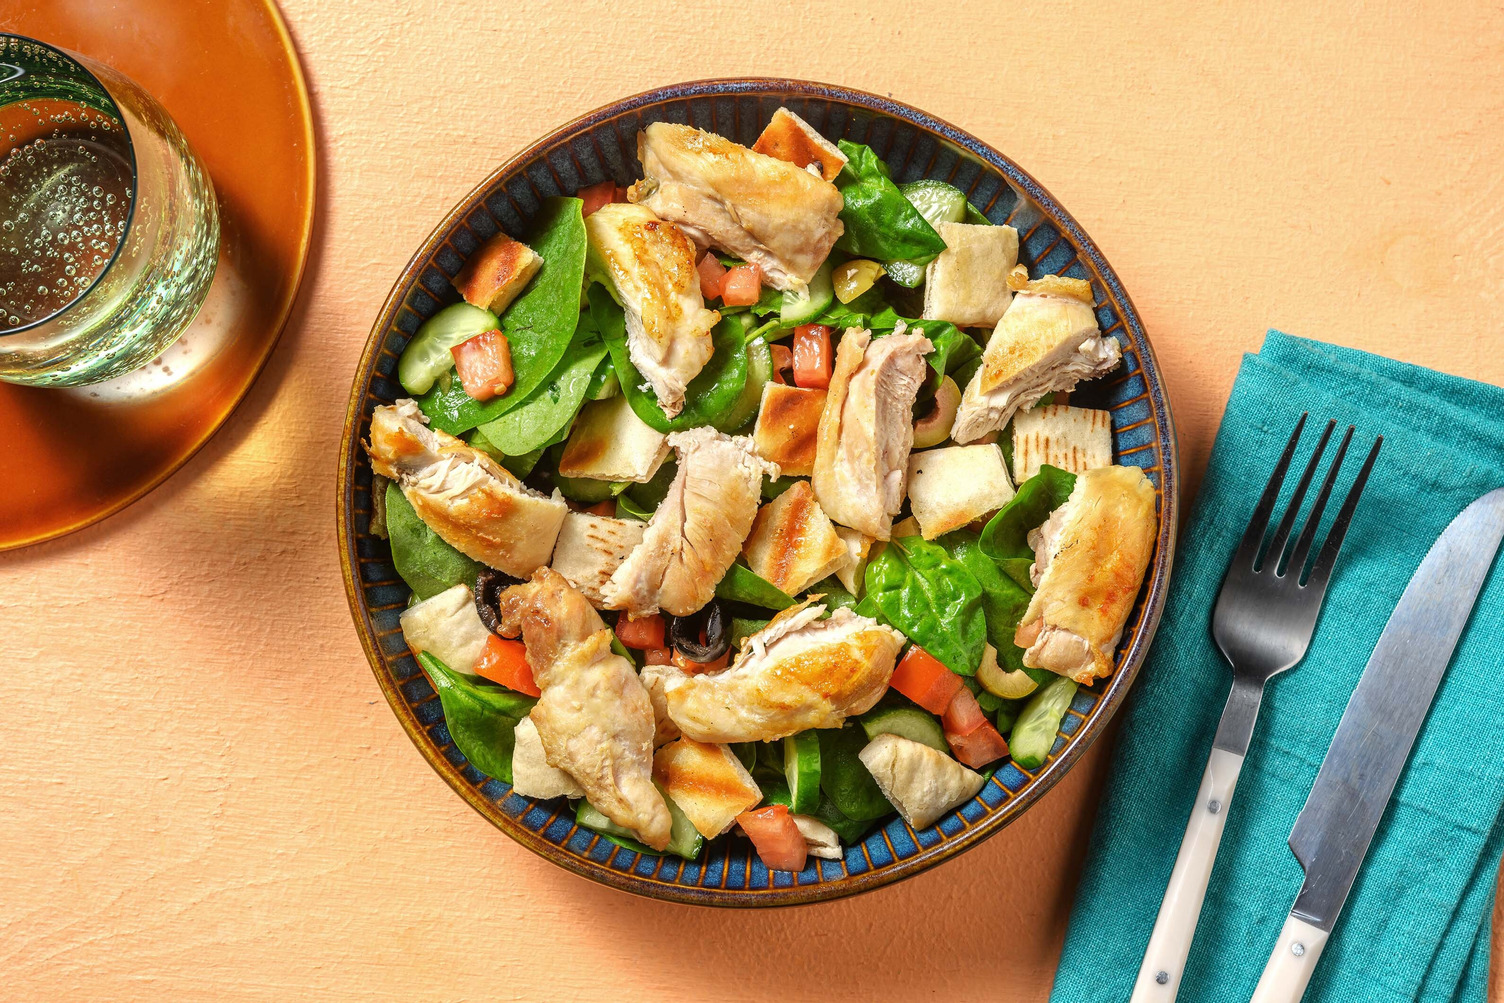 Salade de poulet grillé et vinaigrette façon César Recette